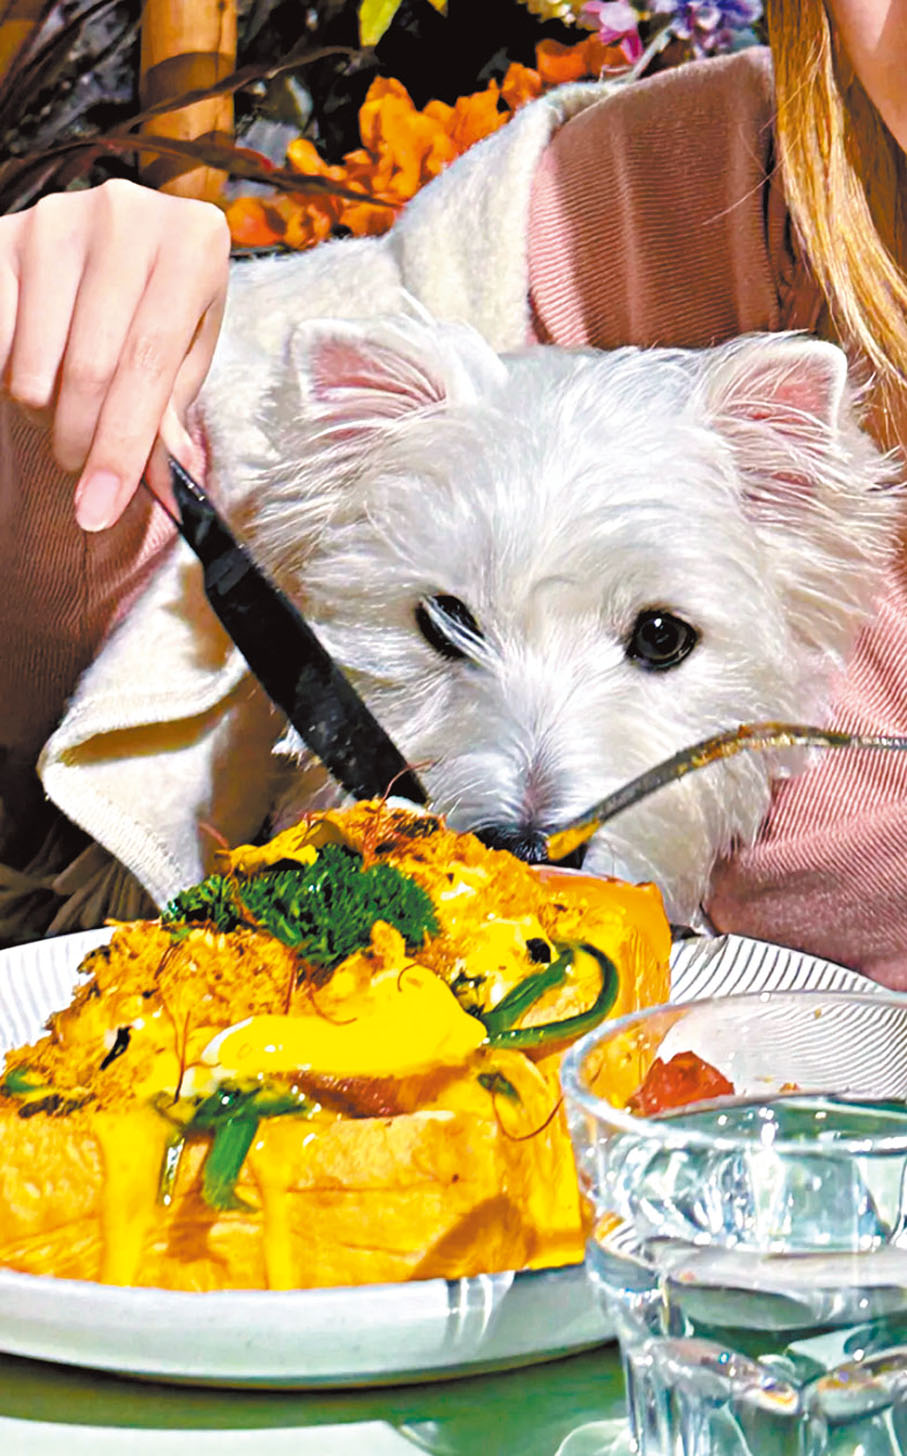 ◆網友qxy733晒出帶狗在寵物友好餐廳消費的照片。